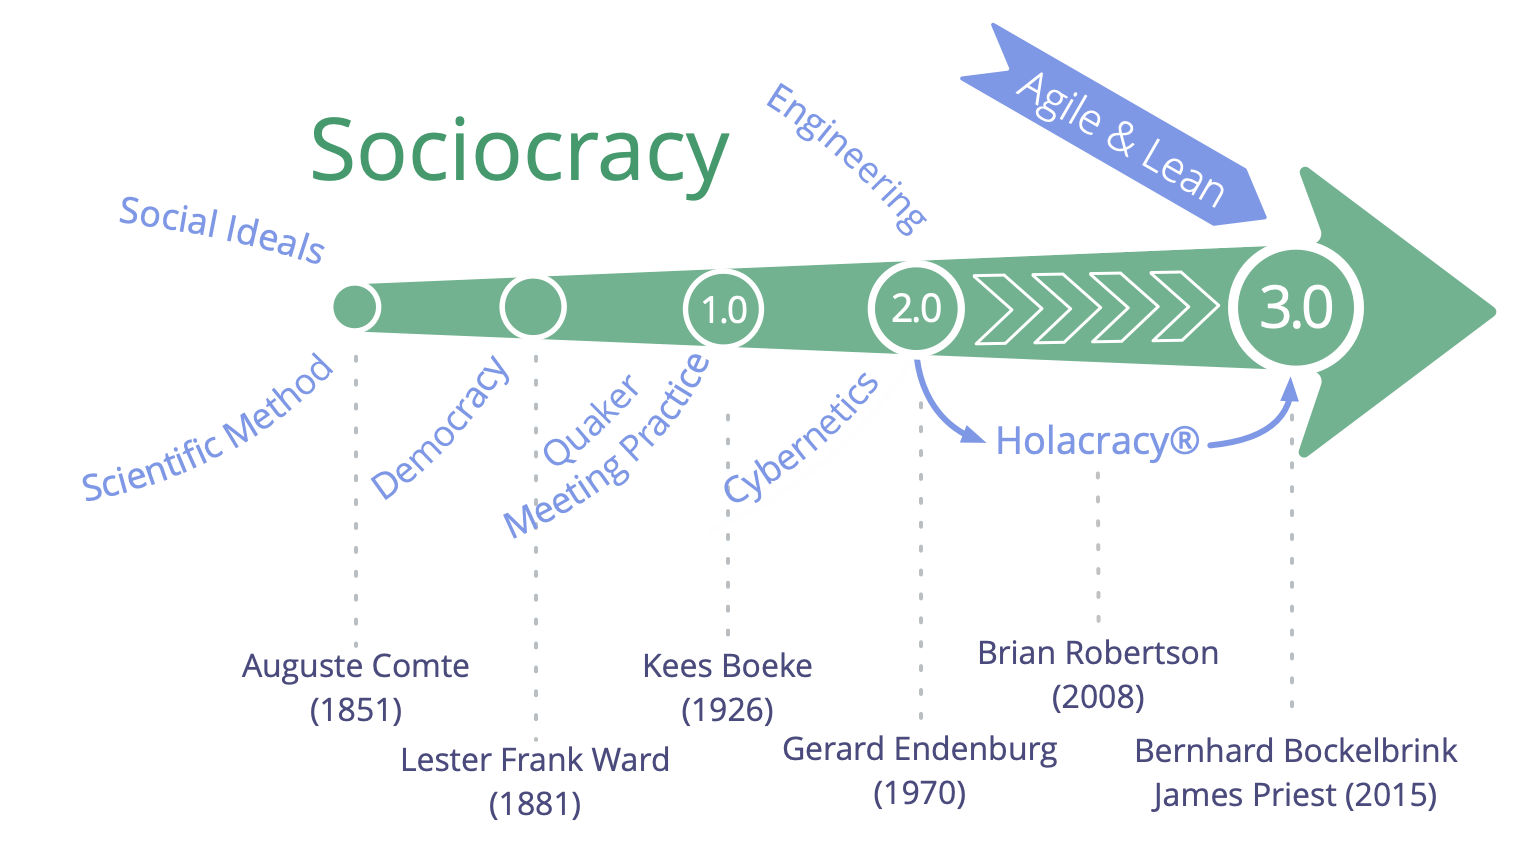 history of Sociocracy up to Sociocracy 3.0